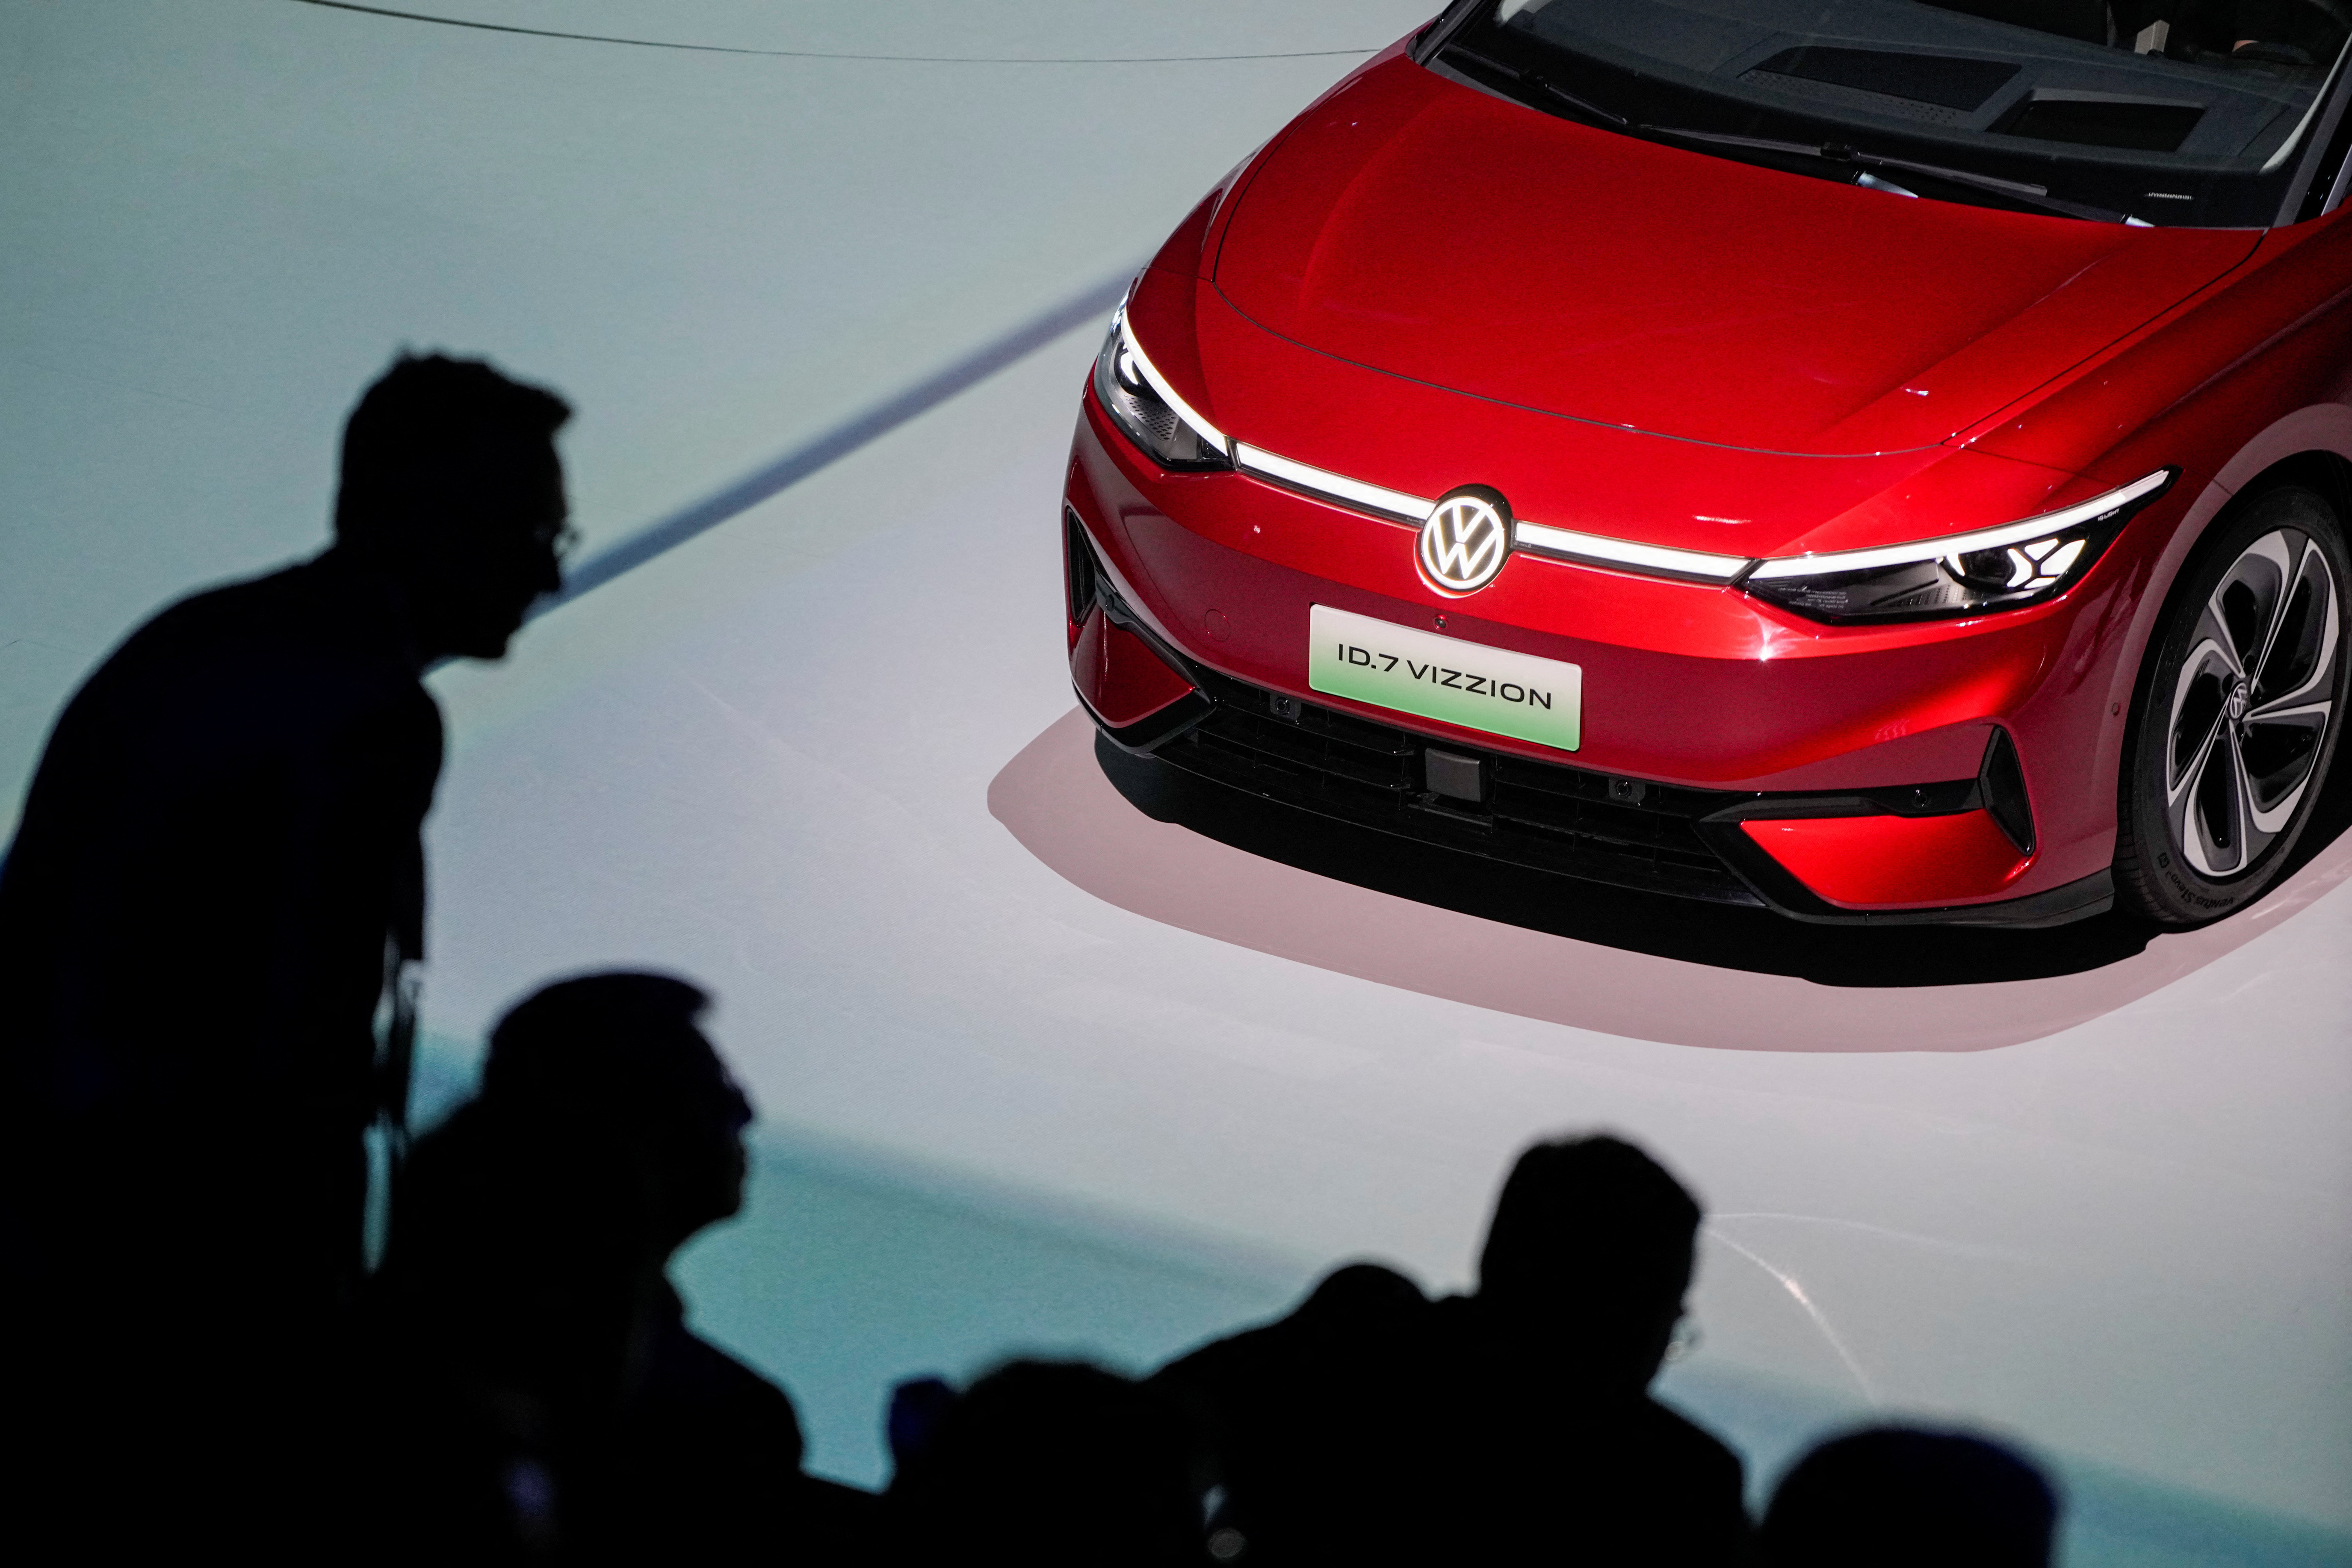 Volkswagen plans 10 more EV models by 2026